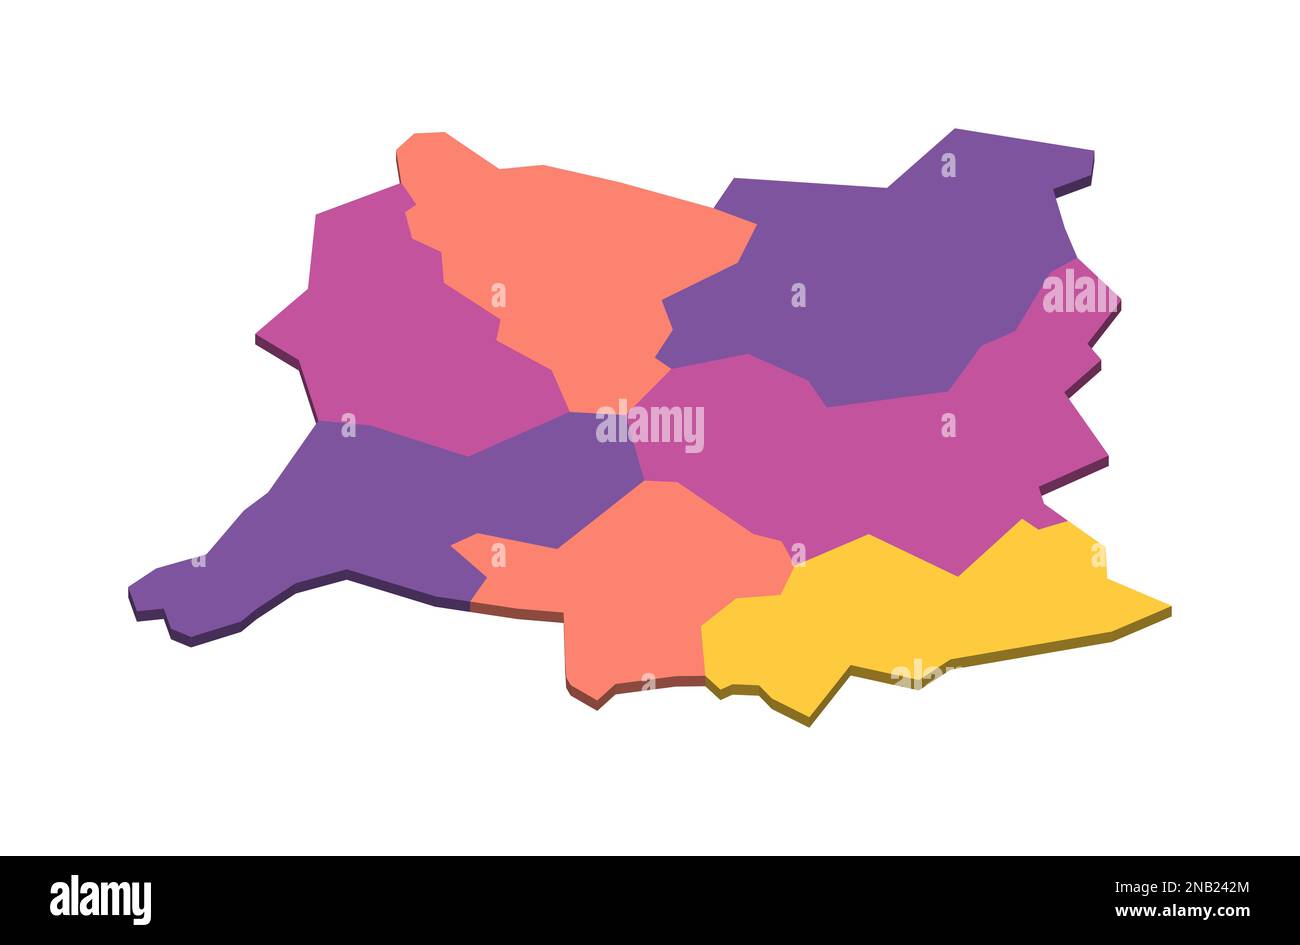 Mappa politica del Kosovo delle divisioni amministrative - distretti. Mappa vettoriale vuota isometrica 3D in schema a quattro colori. Illustrazione Vettoriale